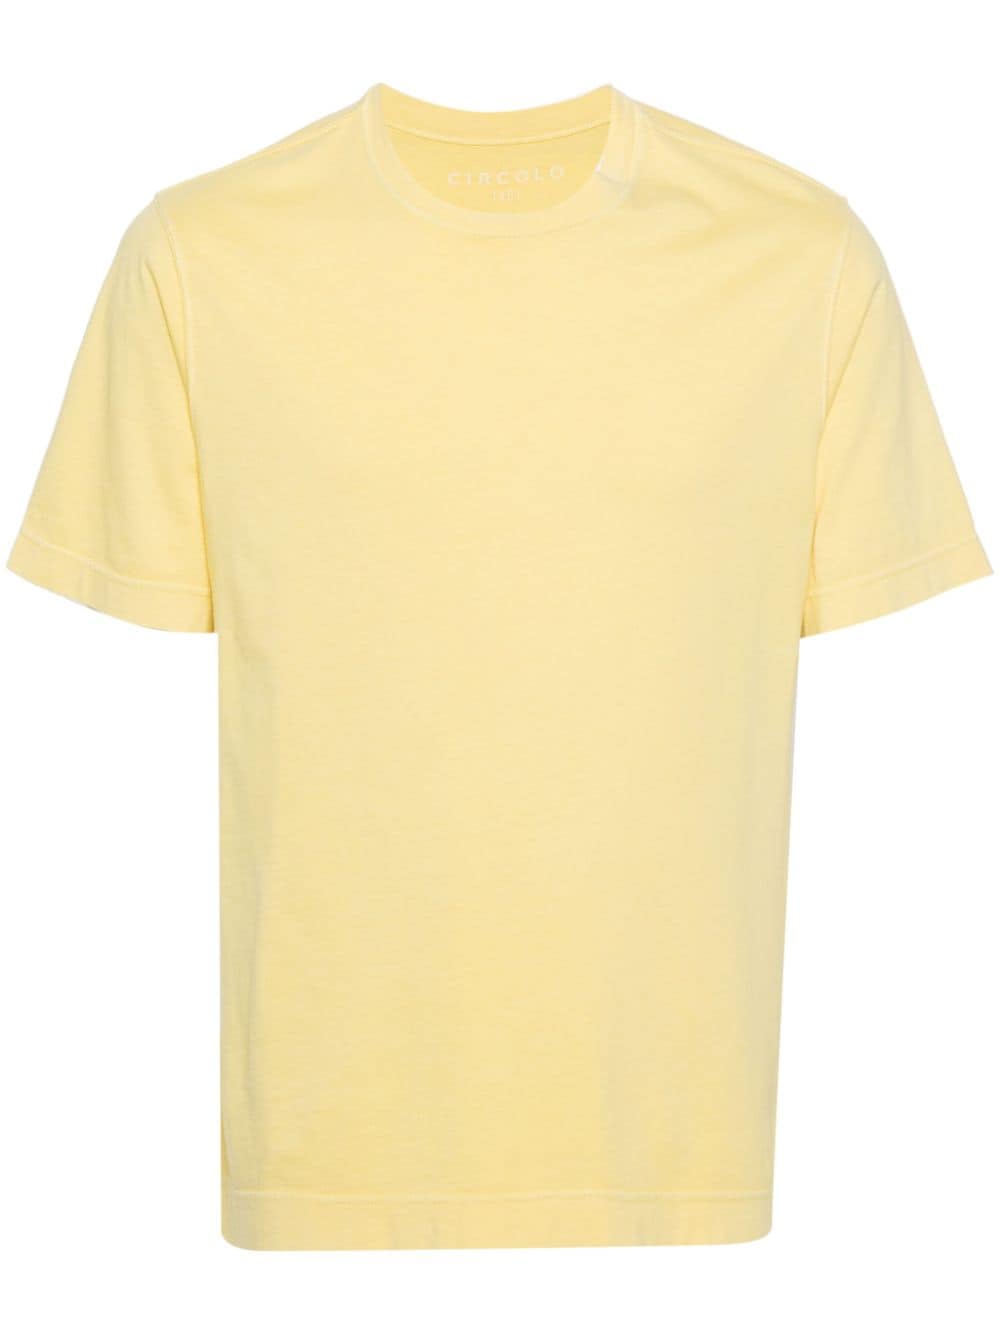 Circolo 1901 short-sleeve cotton T-shirt - Yellow von Circolo 1901